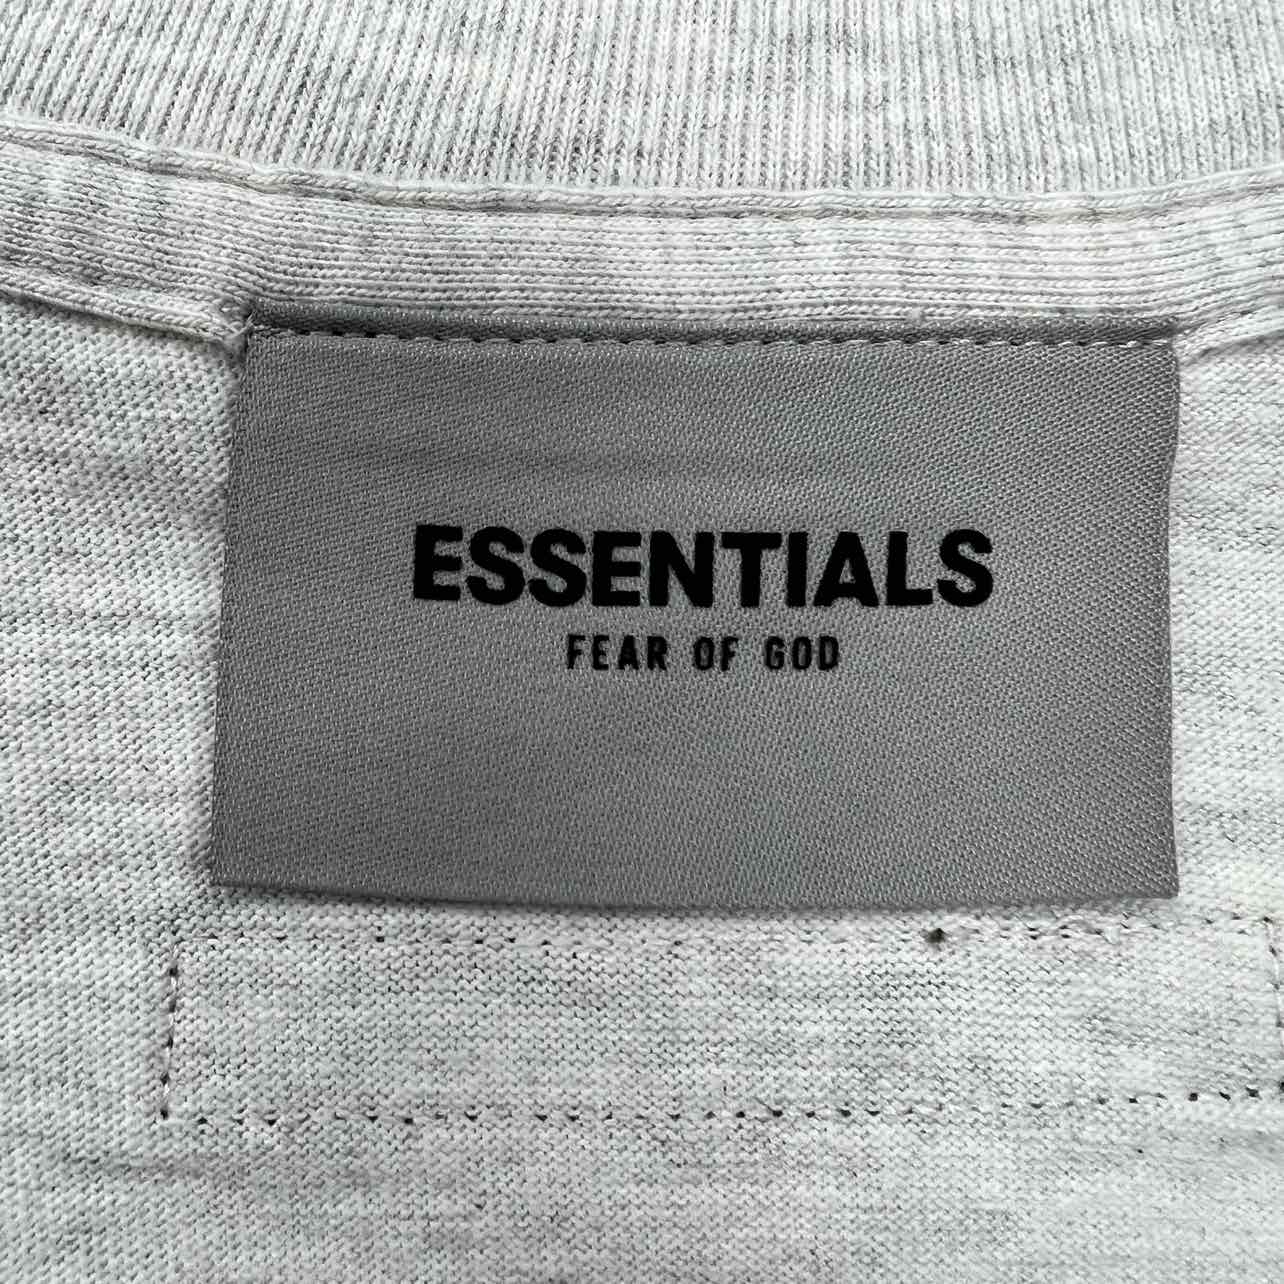 Fear of God T-Shirt &quot;ESSENTIALS&quot; Oatmeal New Size 2XL